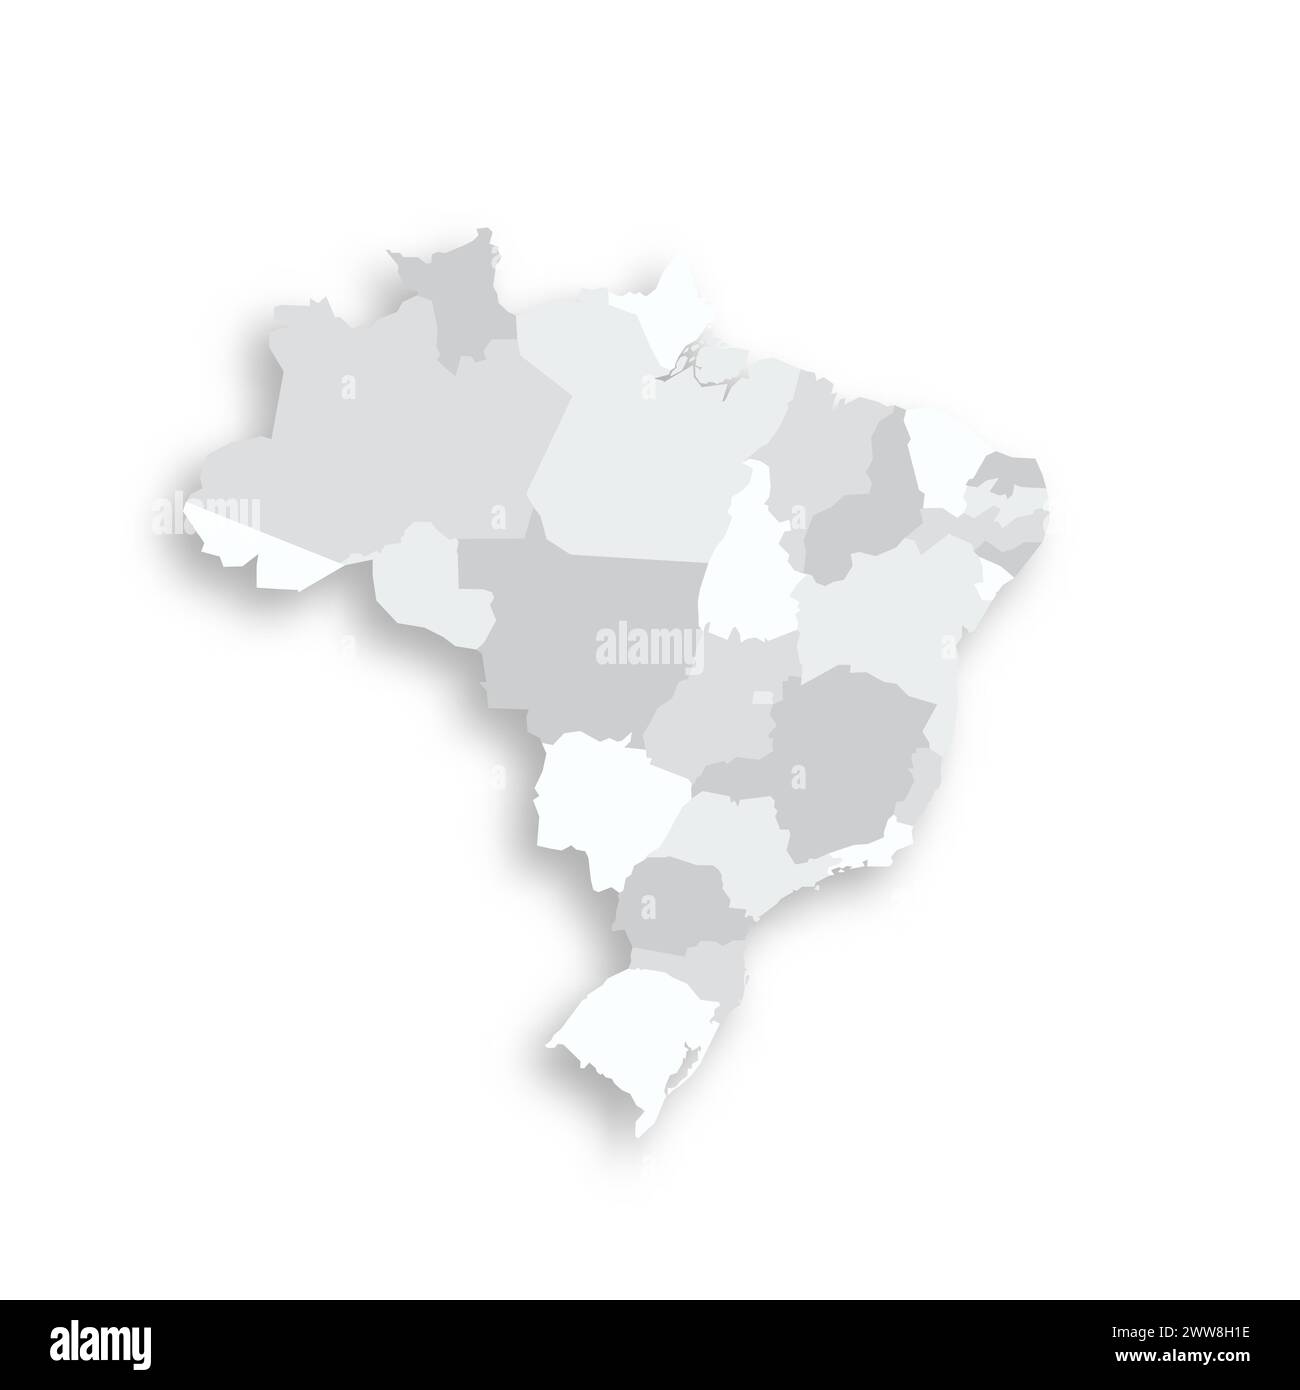 Brasilien politische Karte der Verwaltungsbereiche - Föderative Einheiten Brasiliens. Graue leere flache Vektorkarte mit fallendem Schatten. Stock Vektor